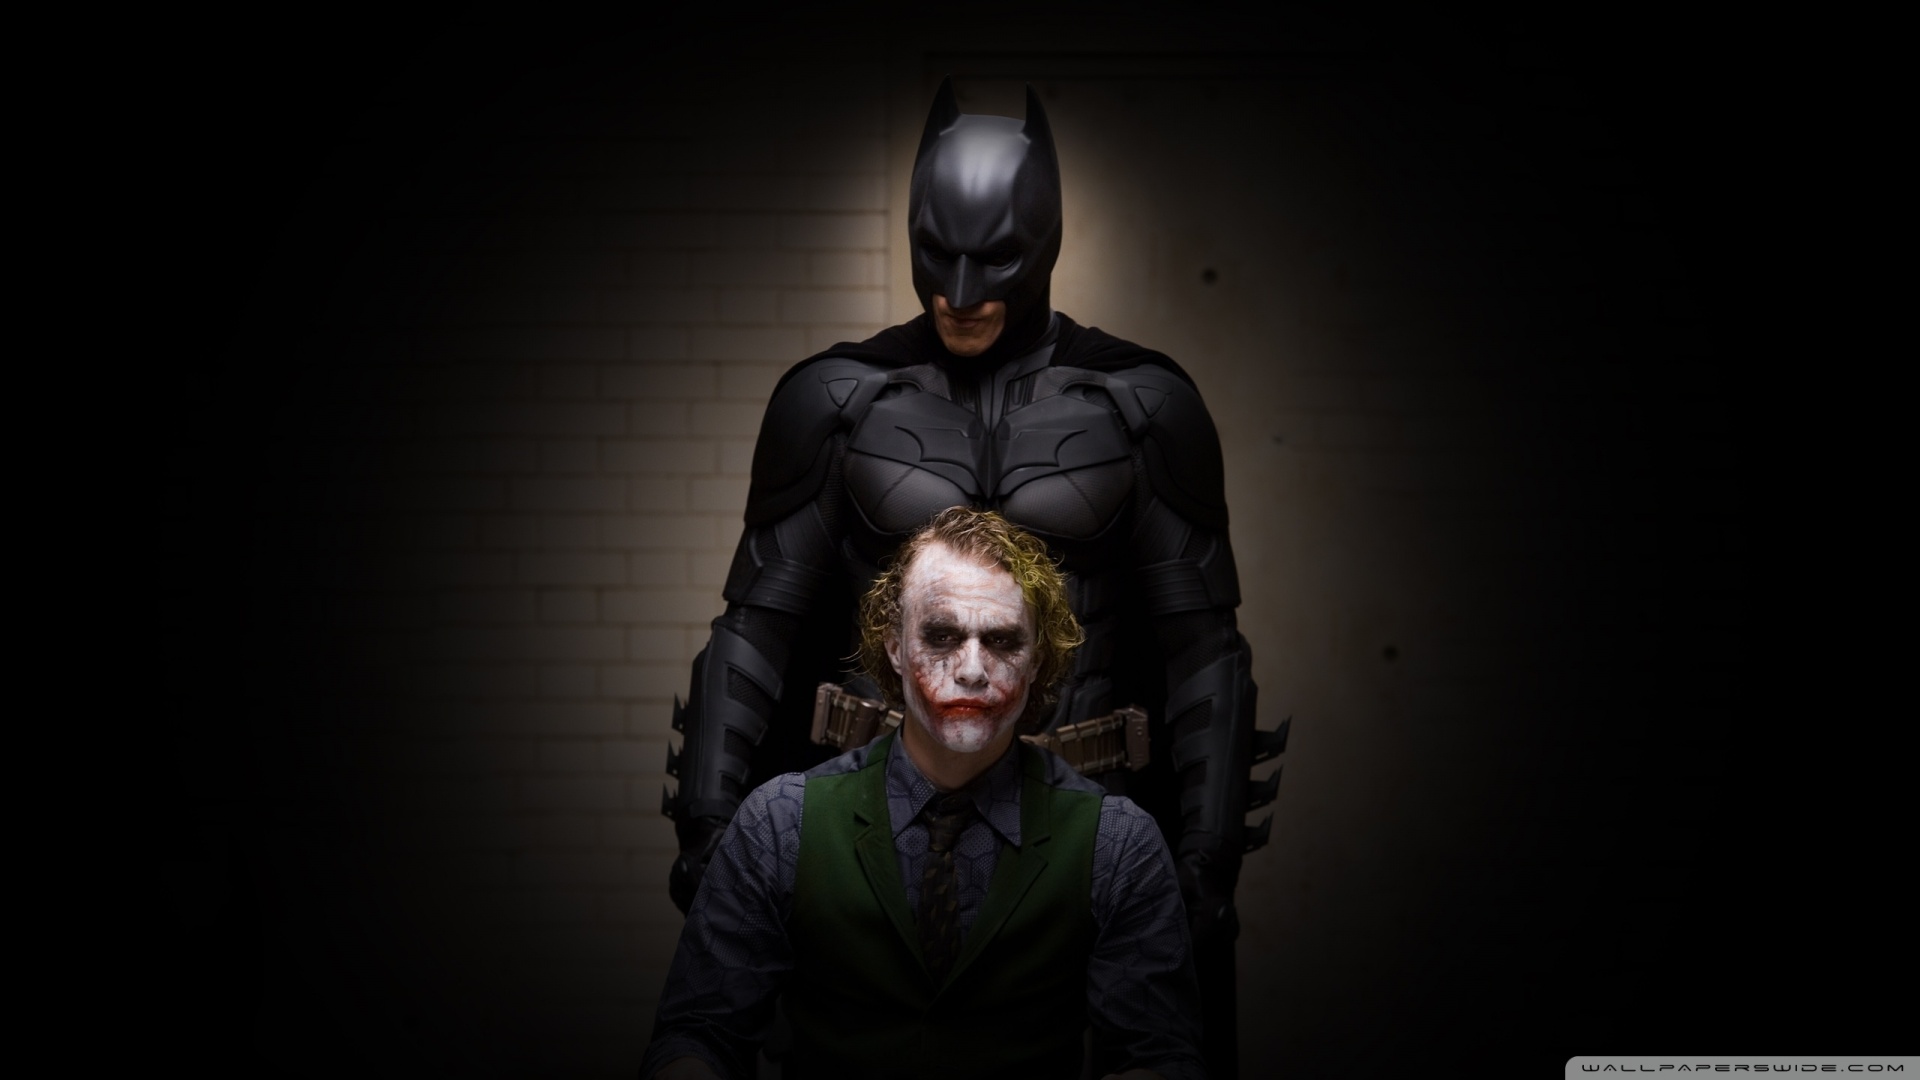 Batman And Joker Wallpaper 1920x1080 Batman And Joker